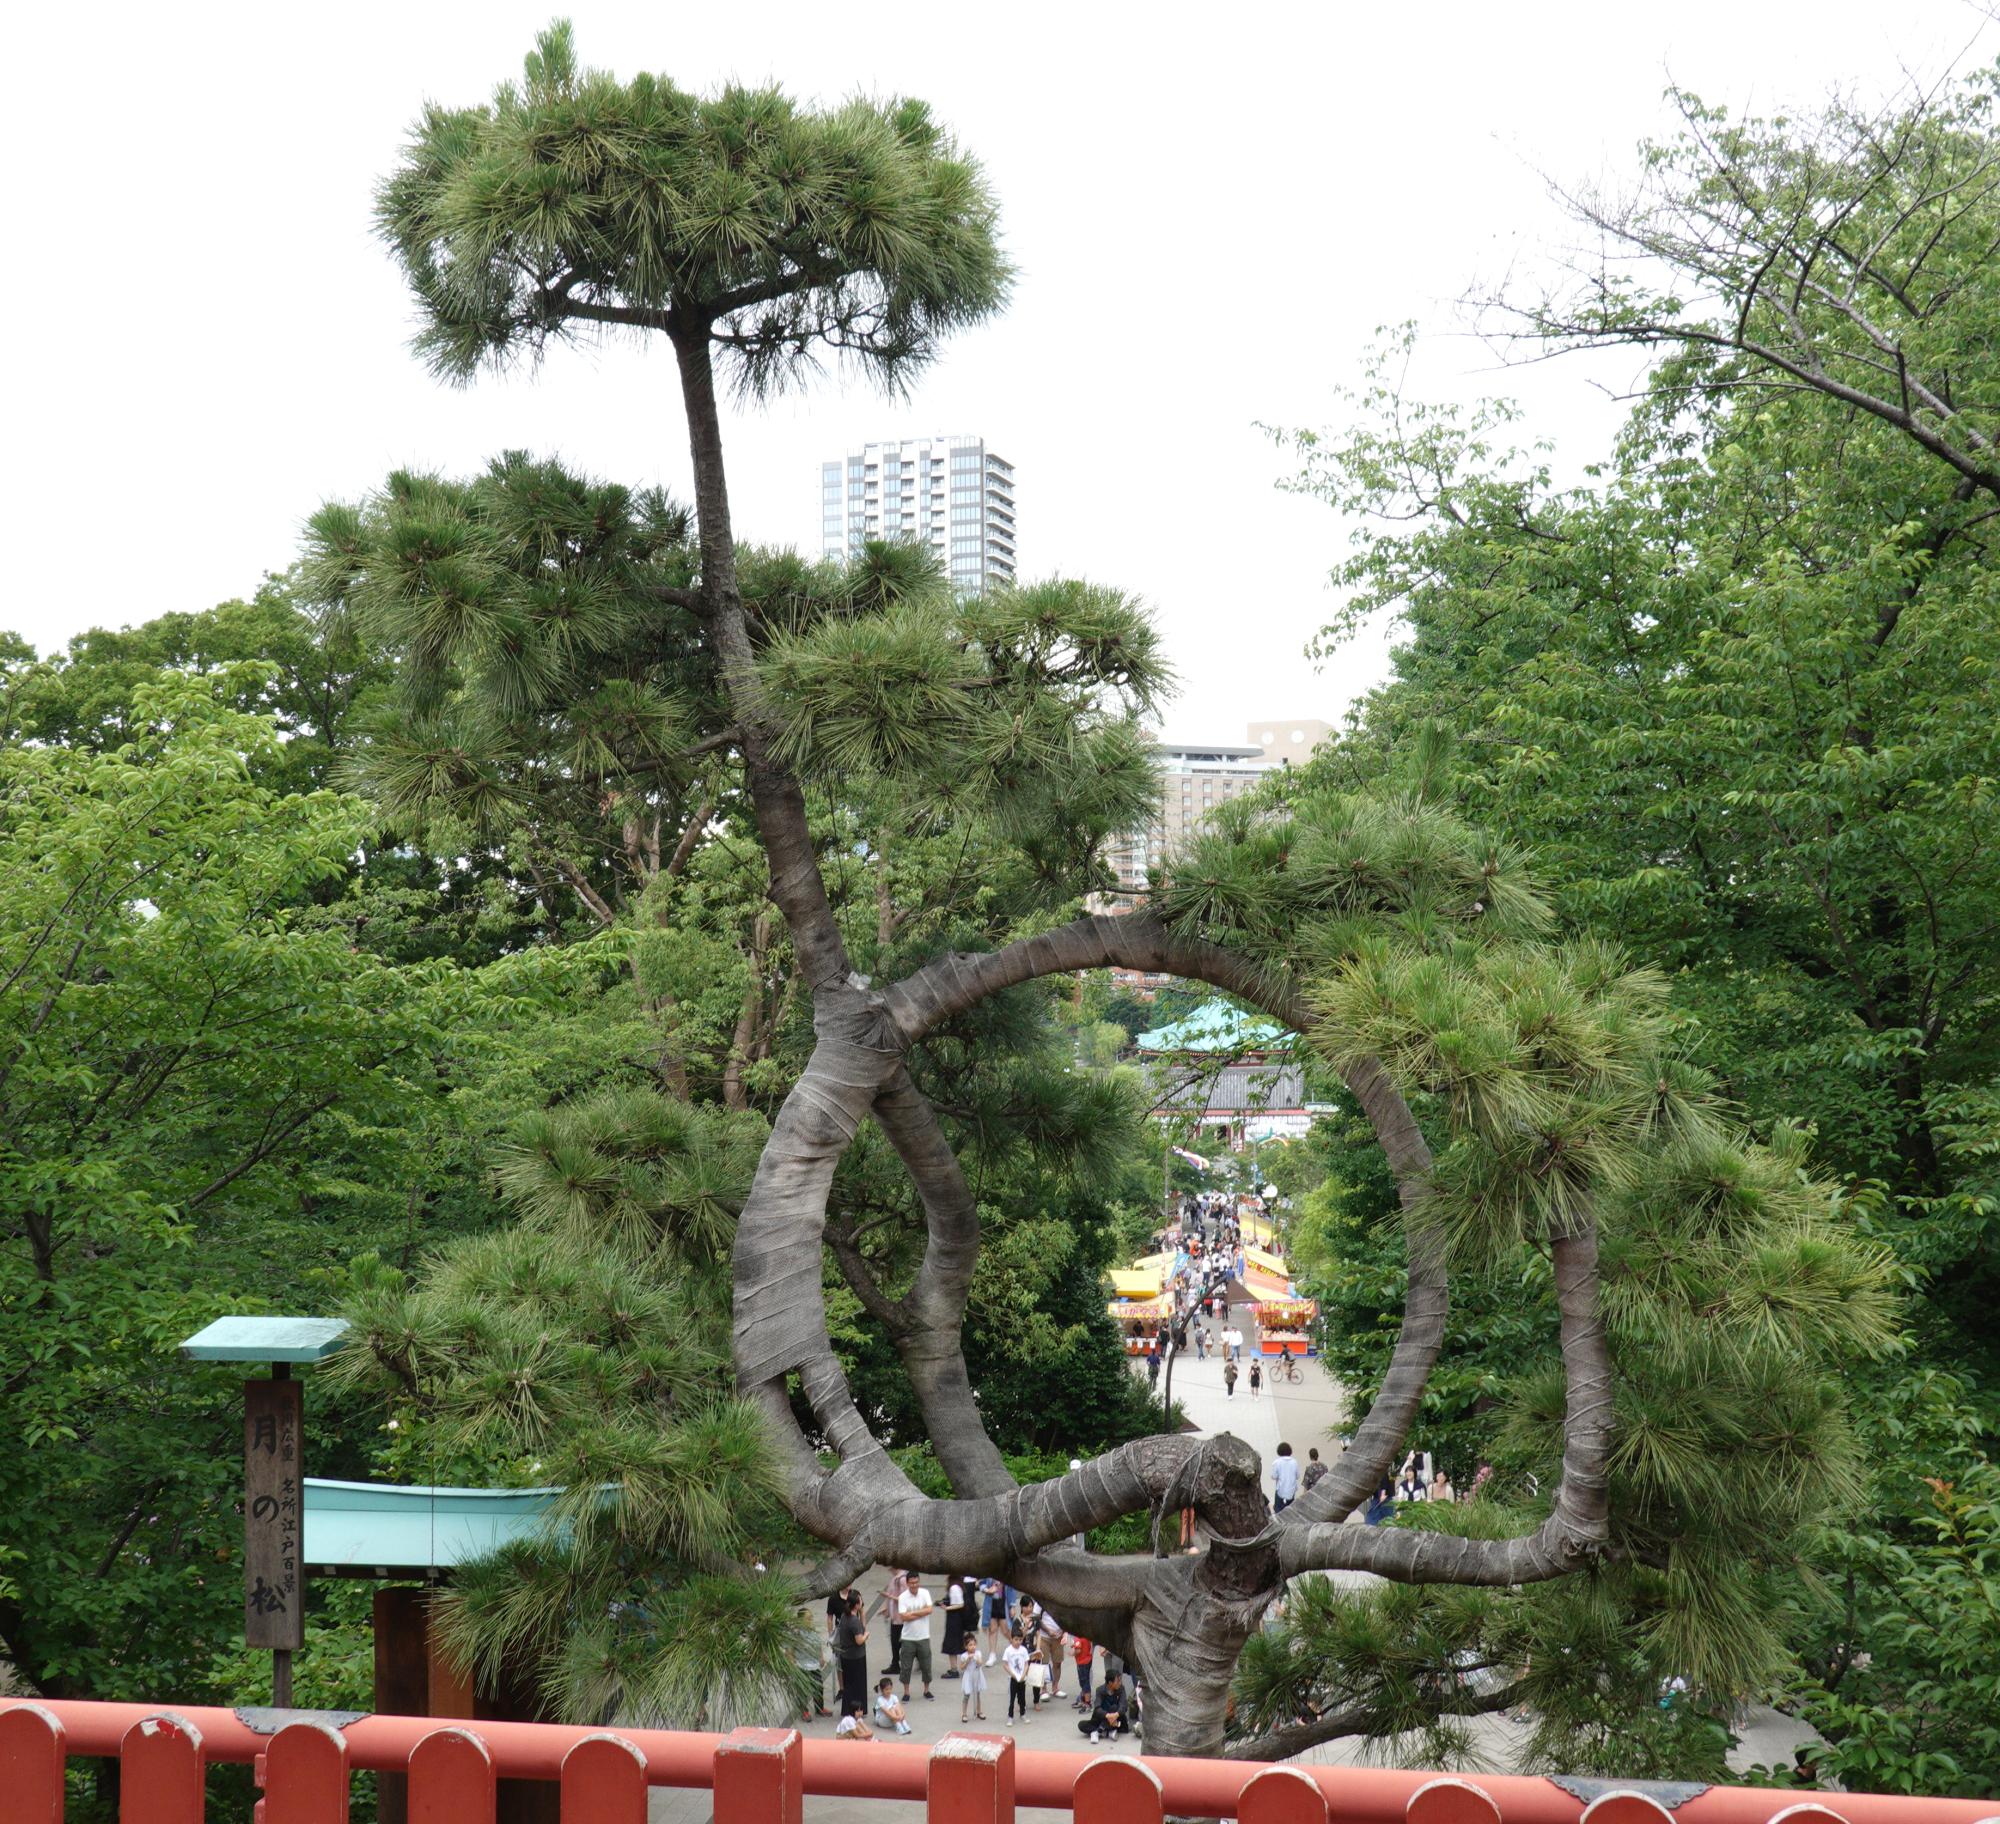 Tokyo (2019) - Tree Sculpture